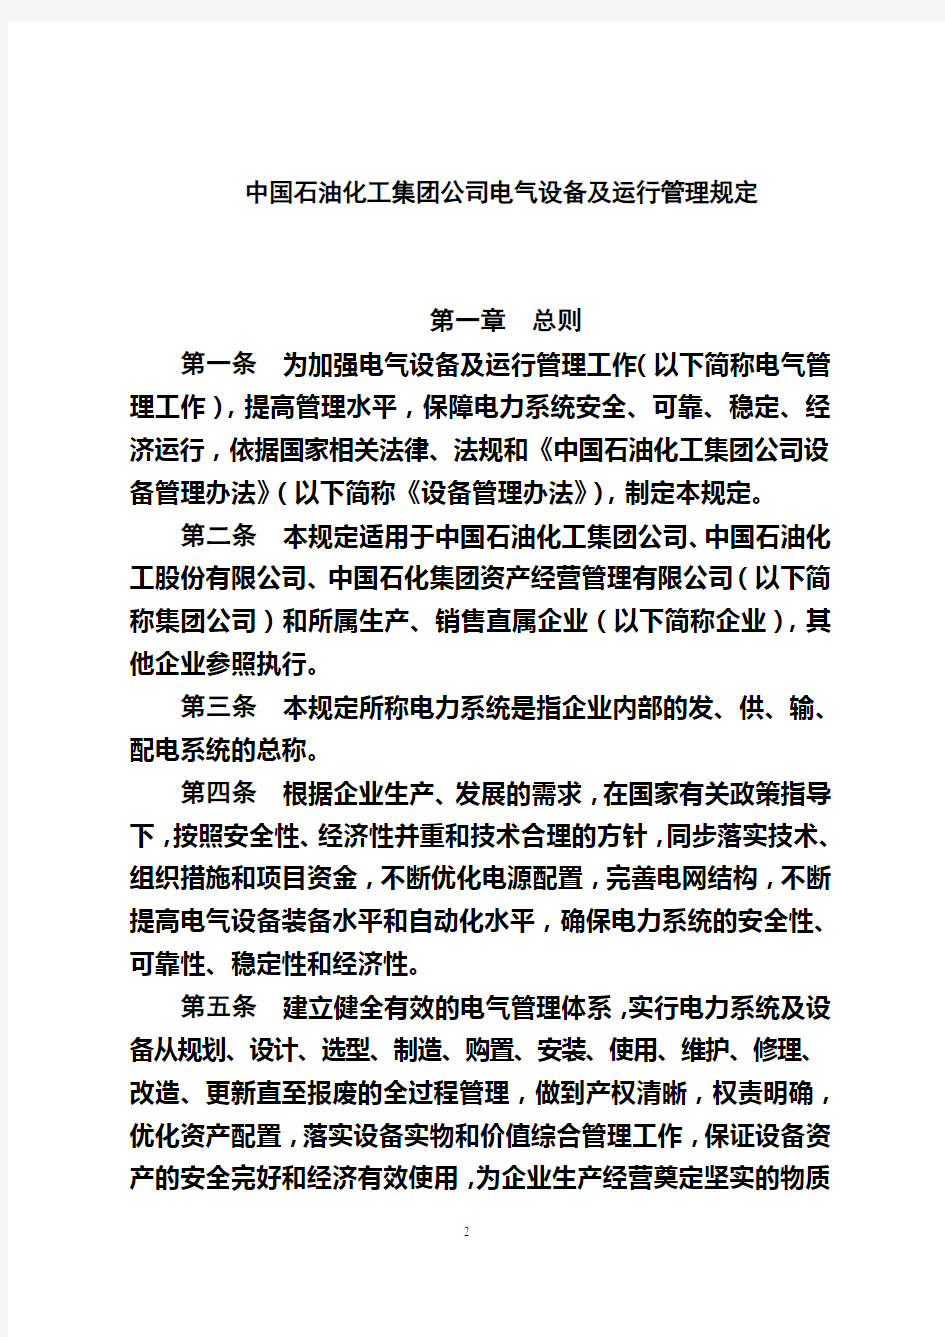 中国石油化工集团公司电气设备及运行管理规定(终稿)